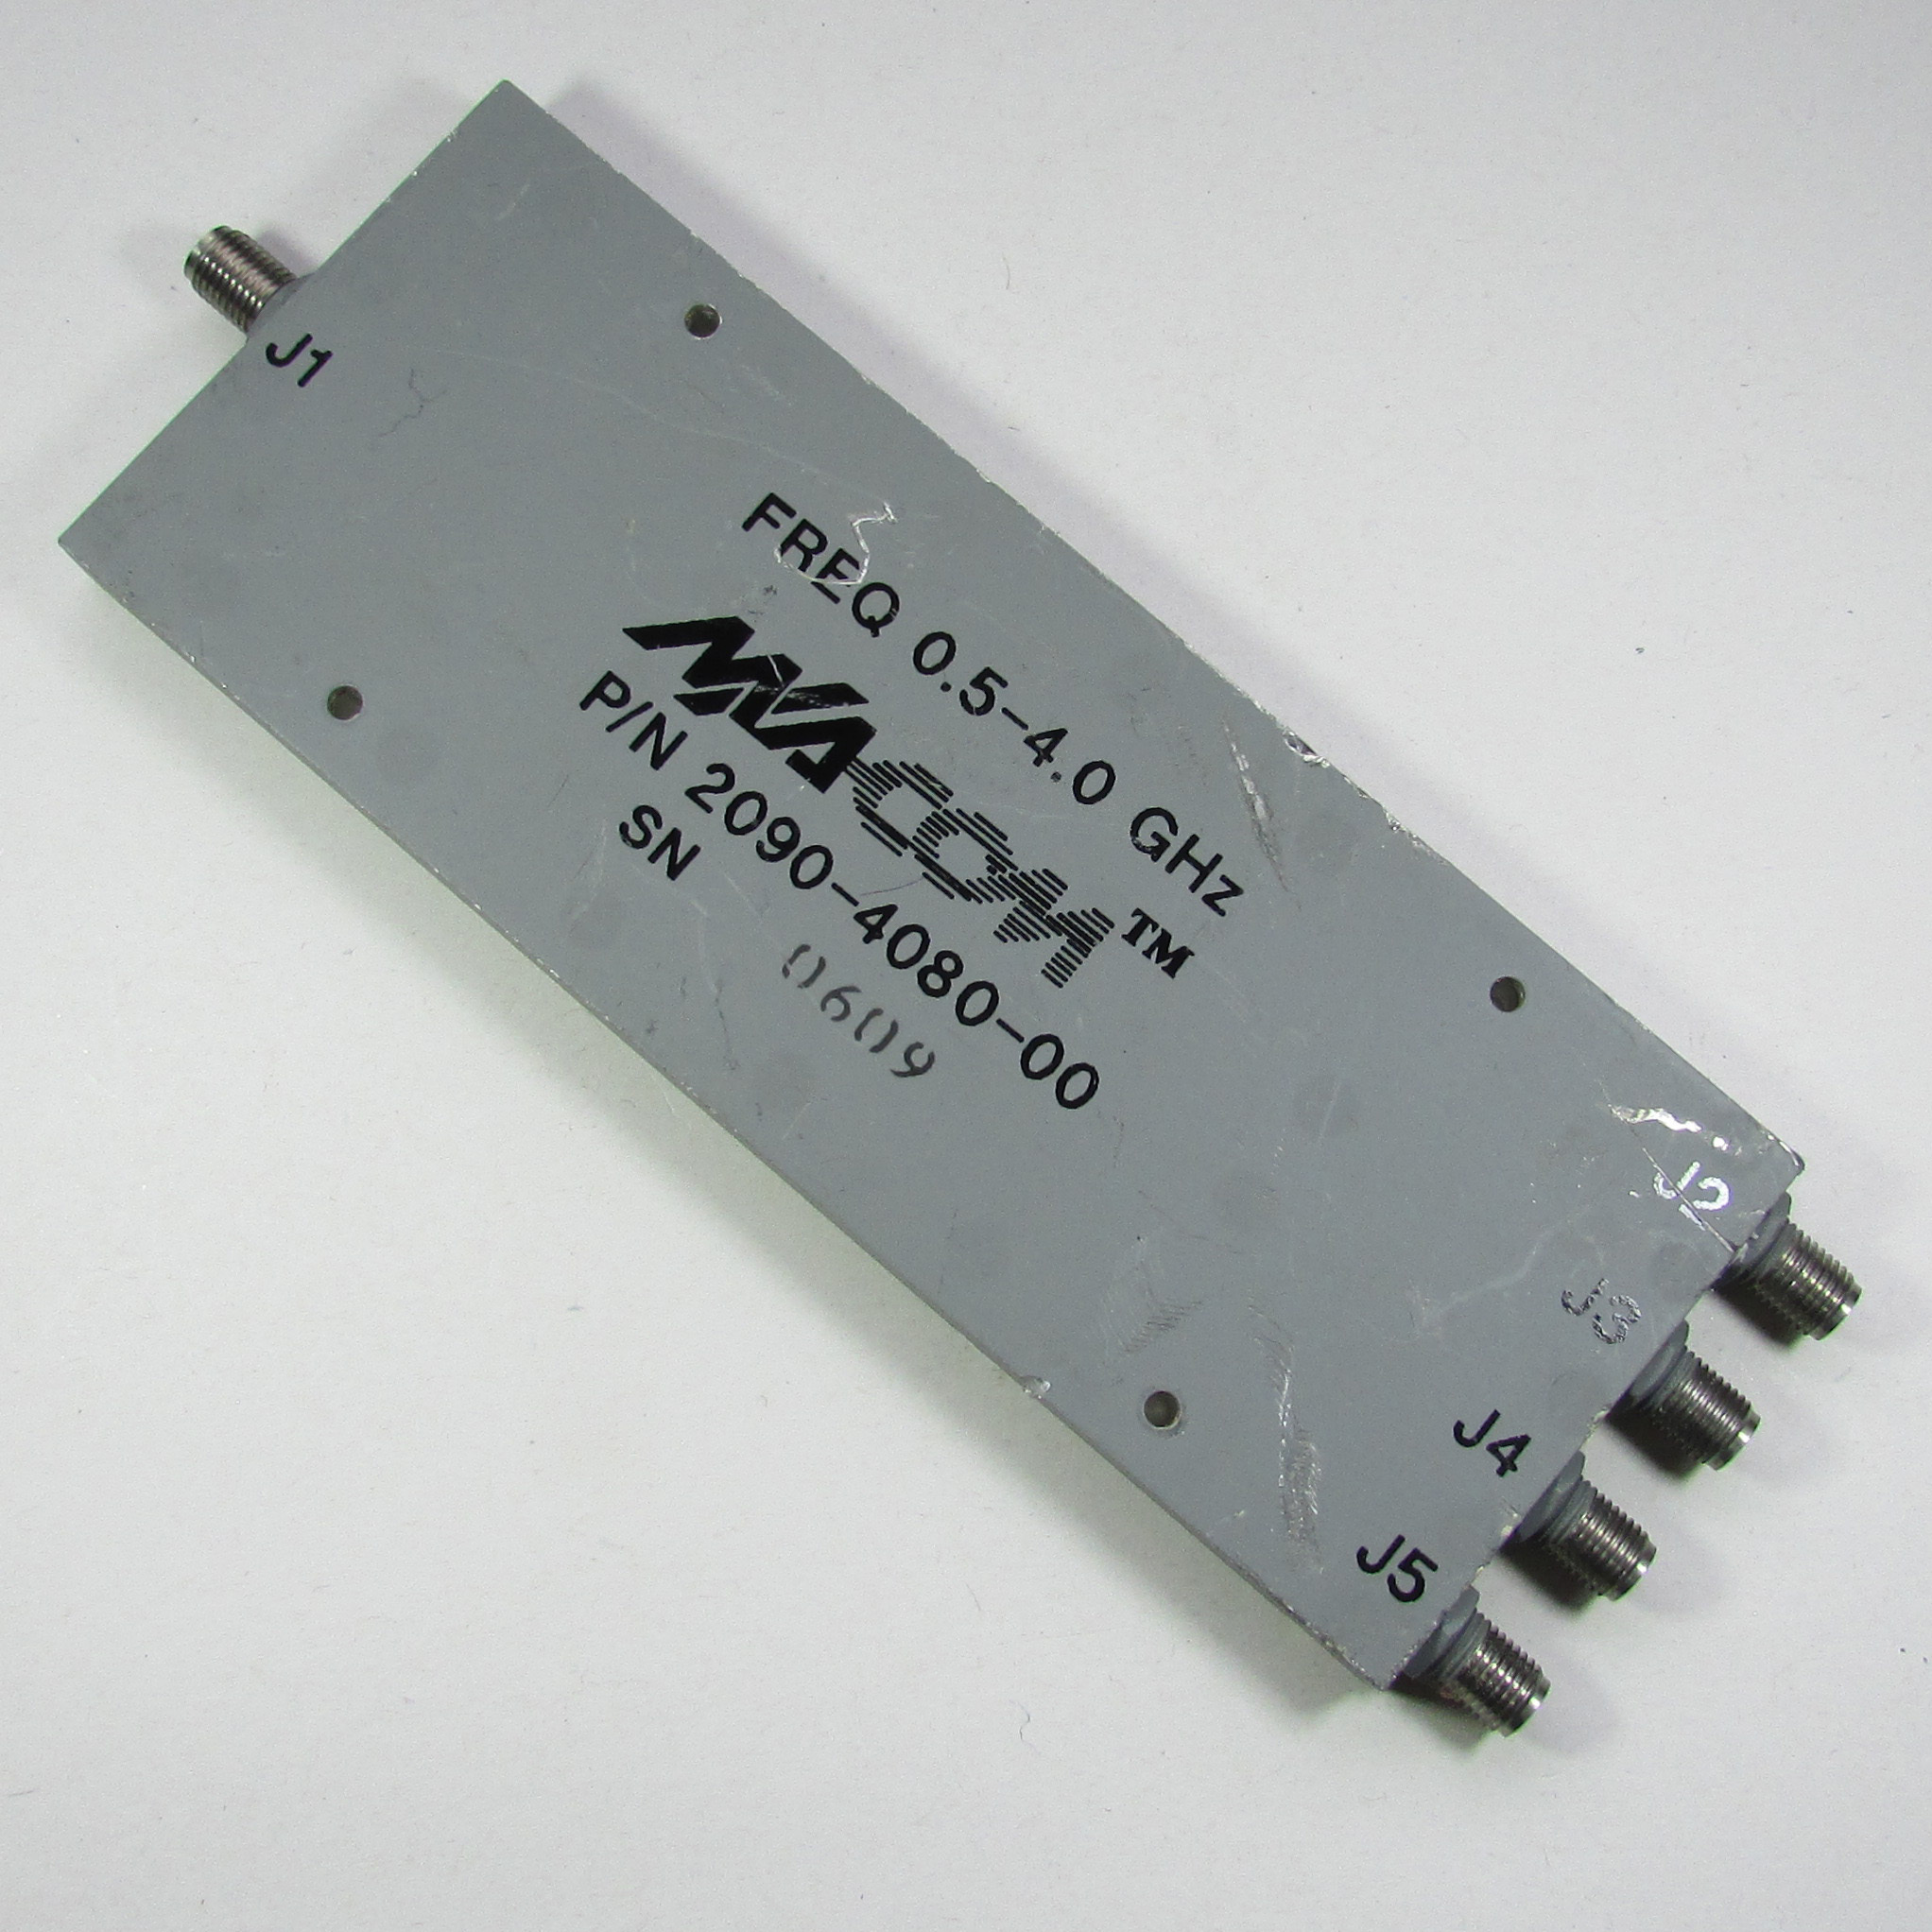 MACOM 2090-4080-00 0.5-4GHz SMA Broadband Power Divider